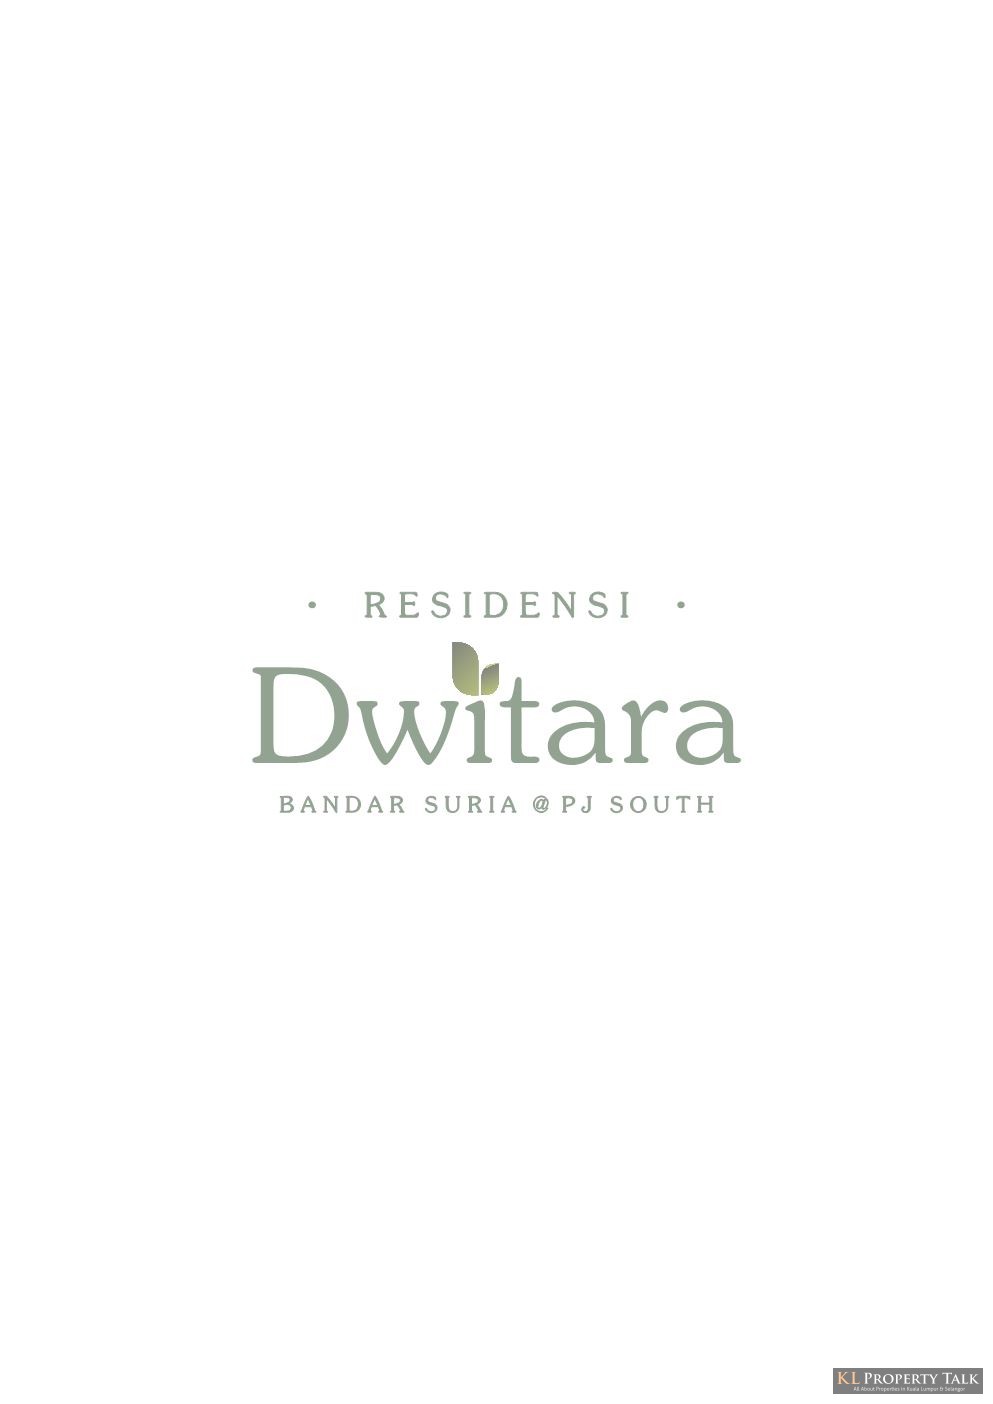 Dwitara Residences